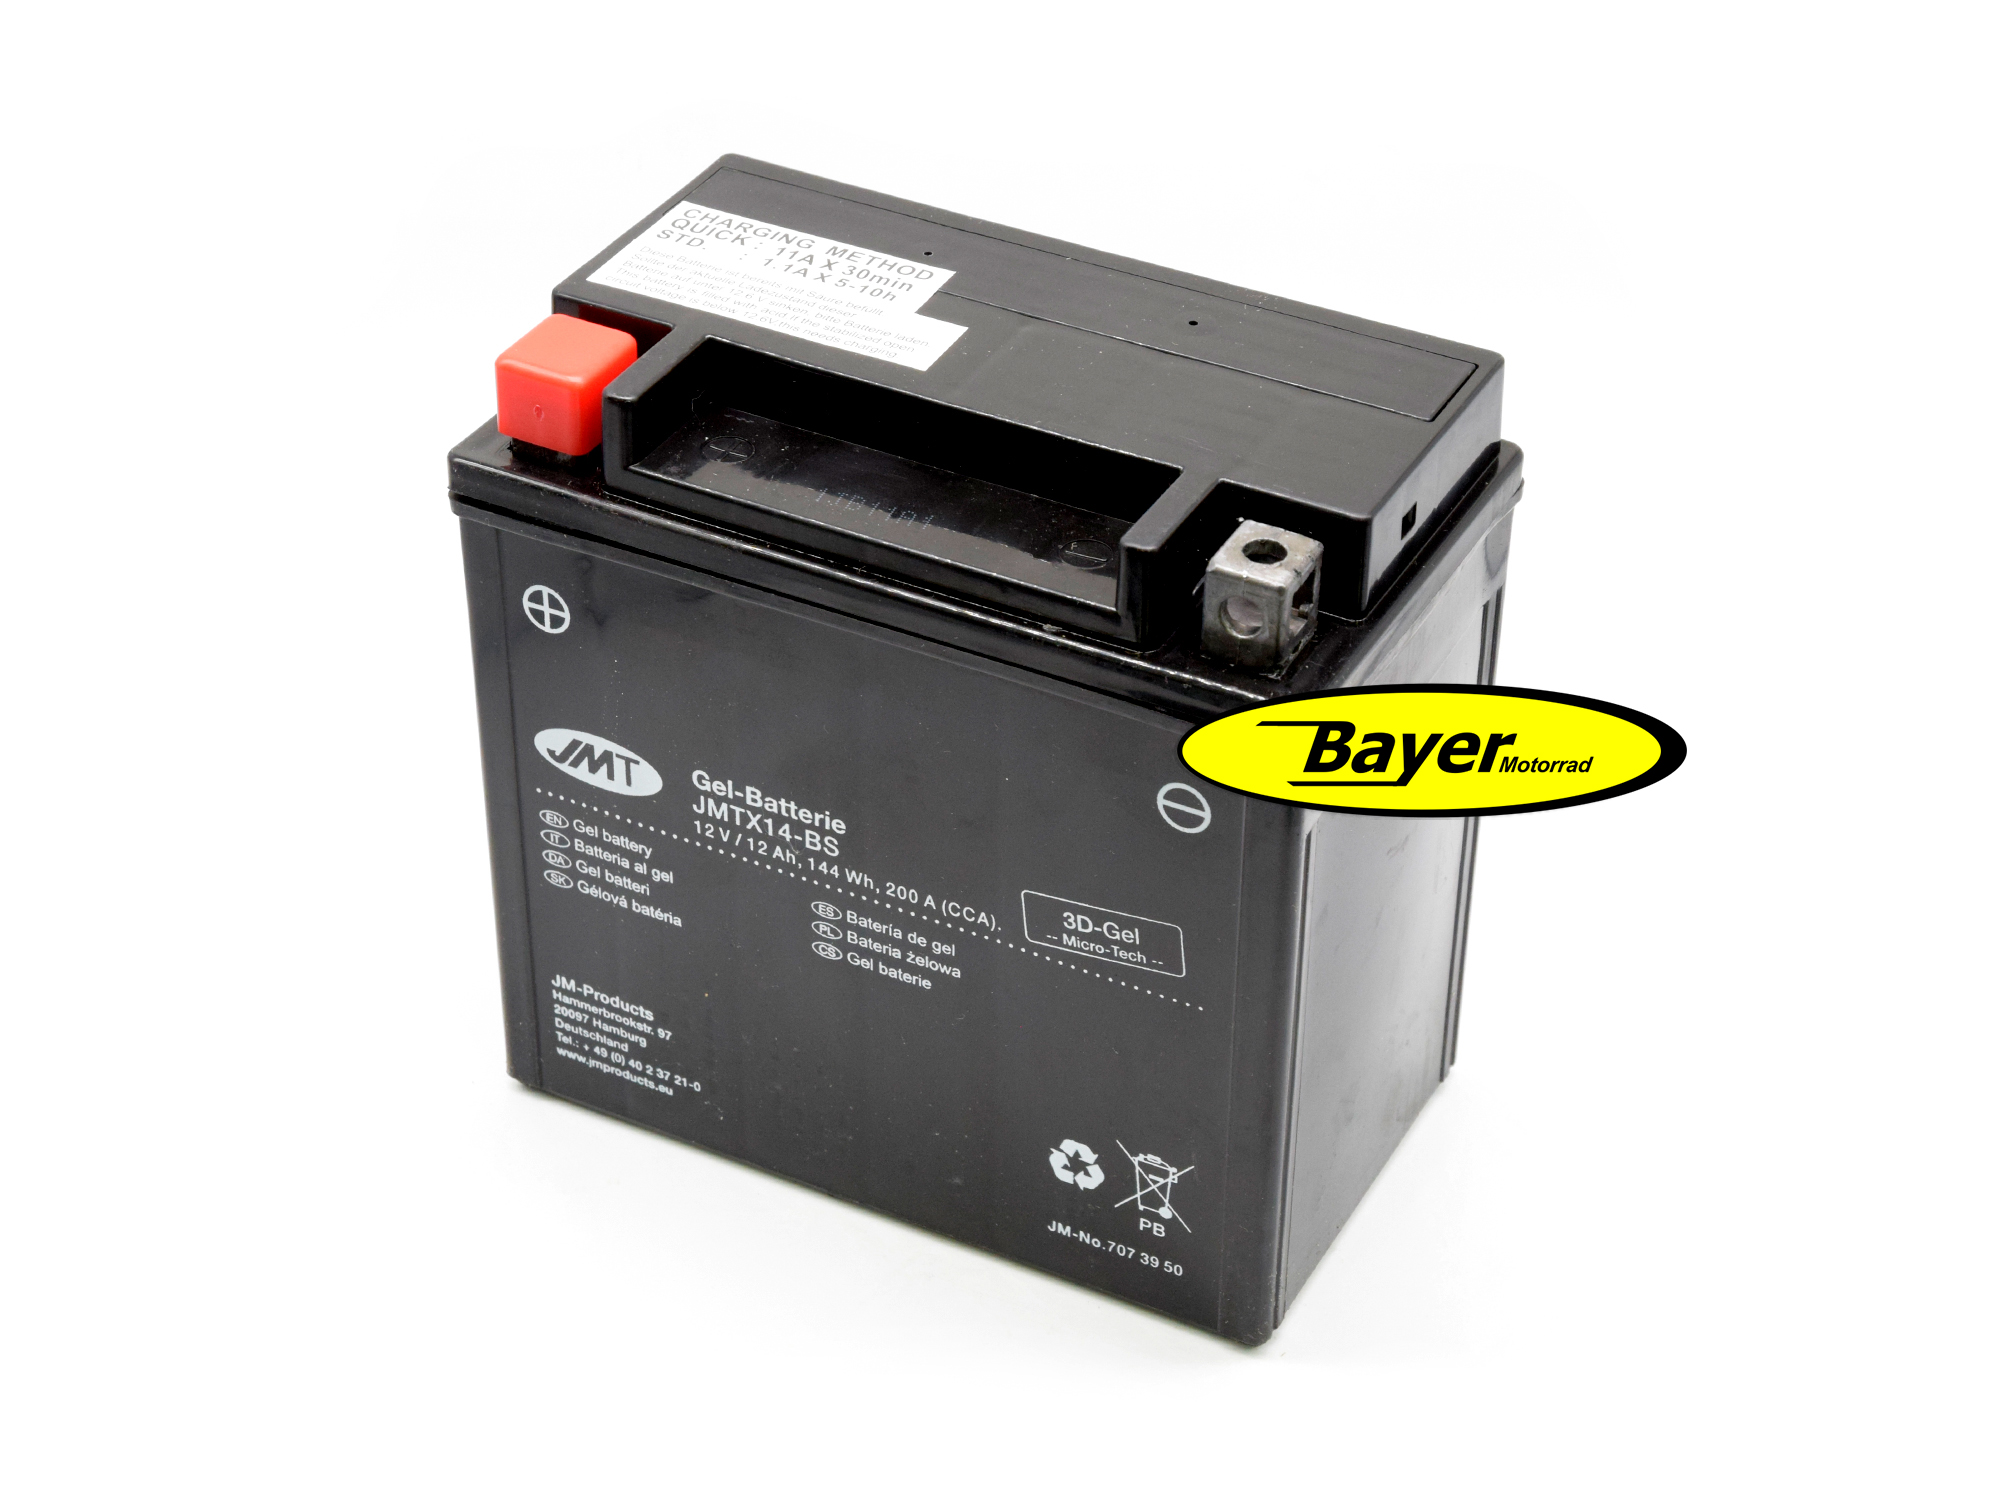 https://www.bayermotor.de/media/images/org/6121179-Batterie_12Volt_12AH_Gel-1.jpg